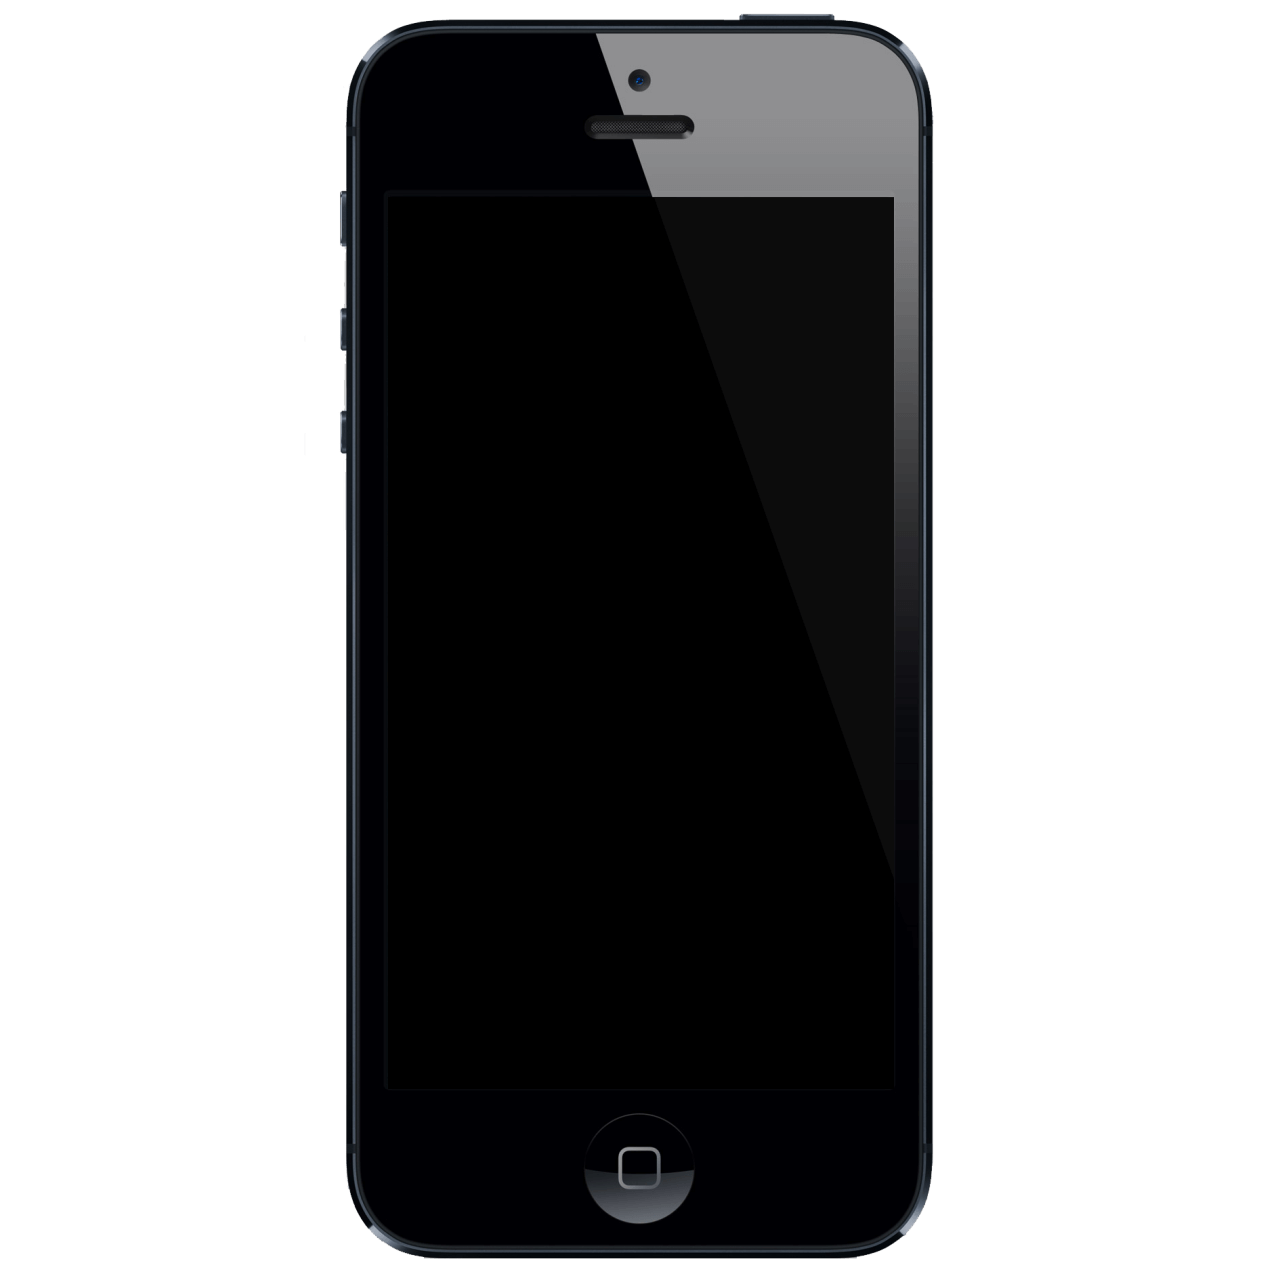 iPhone 5 beeld zwart? 3 oplossingen!